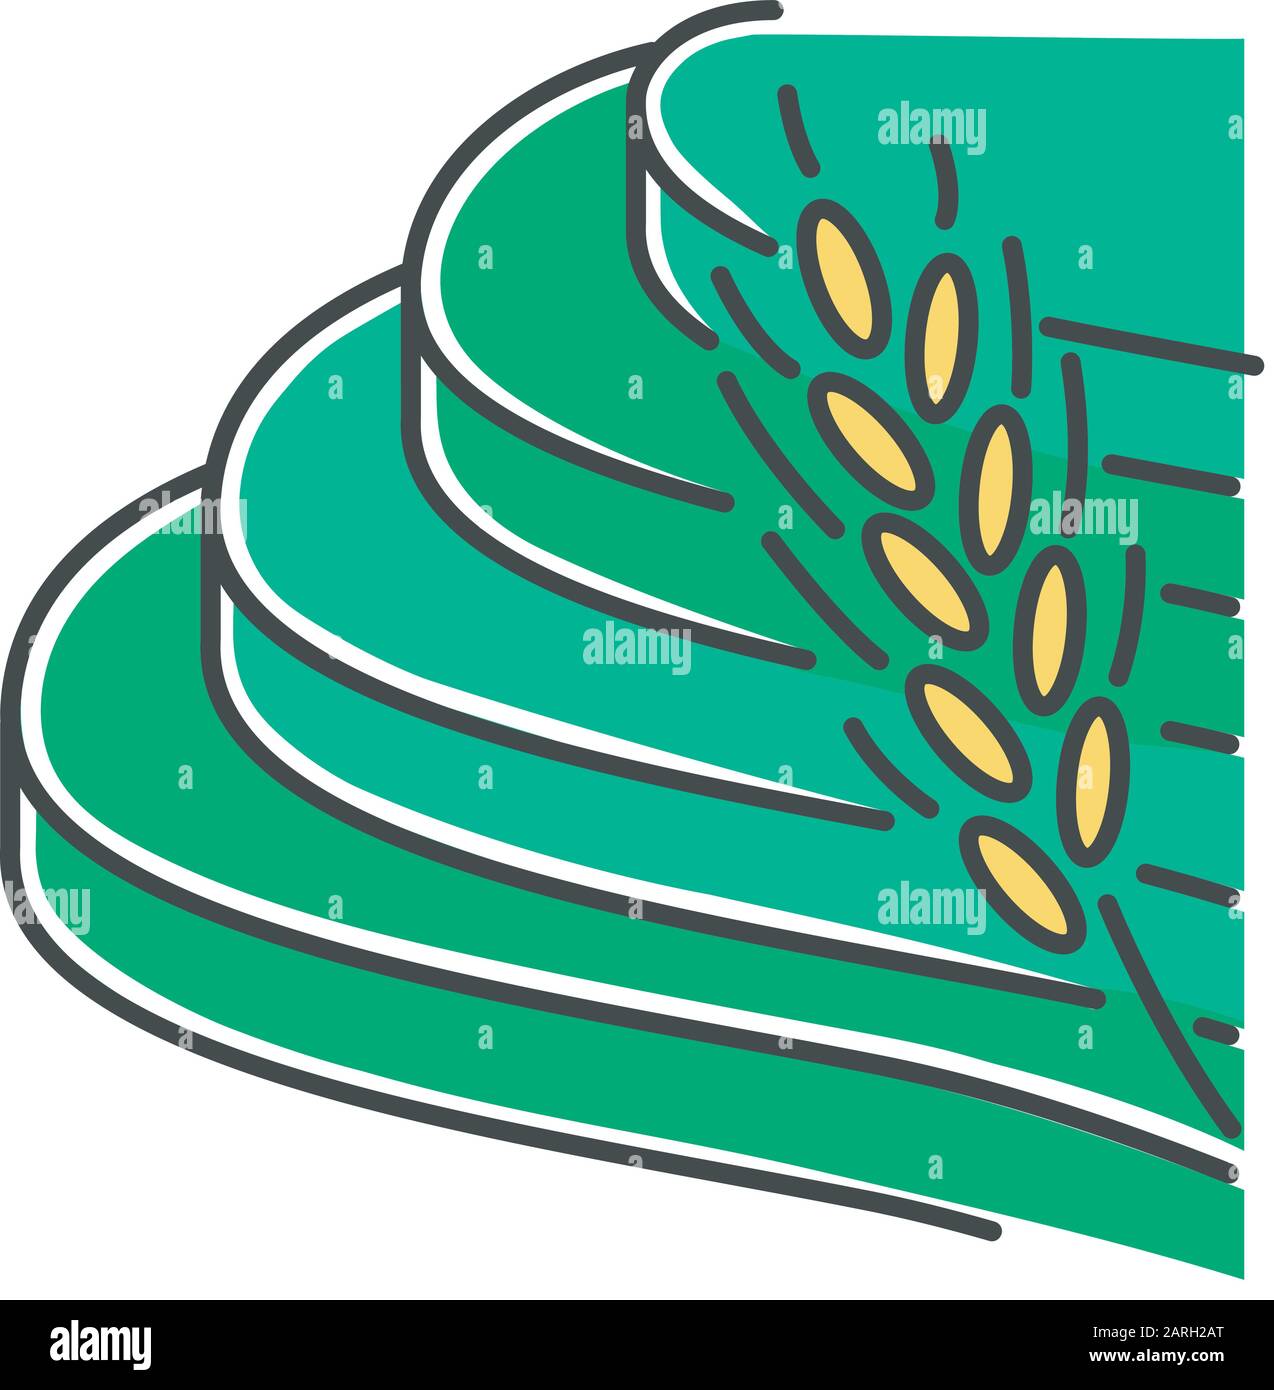 Reis-Grün-Farbsymbol für terrassenförmige Felder. Agrarprodukte. Indonesisches Ackerland. Natur der tropischen Insel. Asiatische Terrassenbaupraxis. Wachstum c Stock Vektor